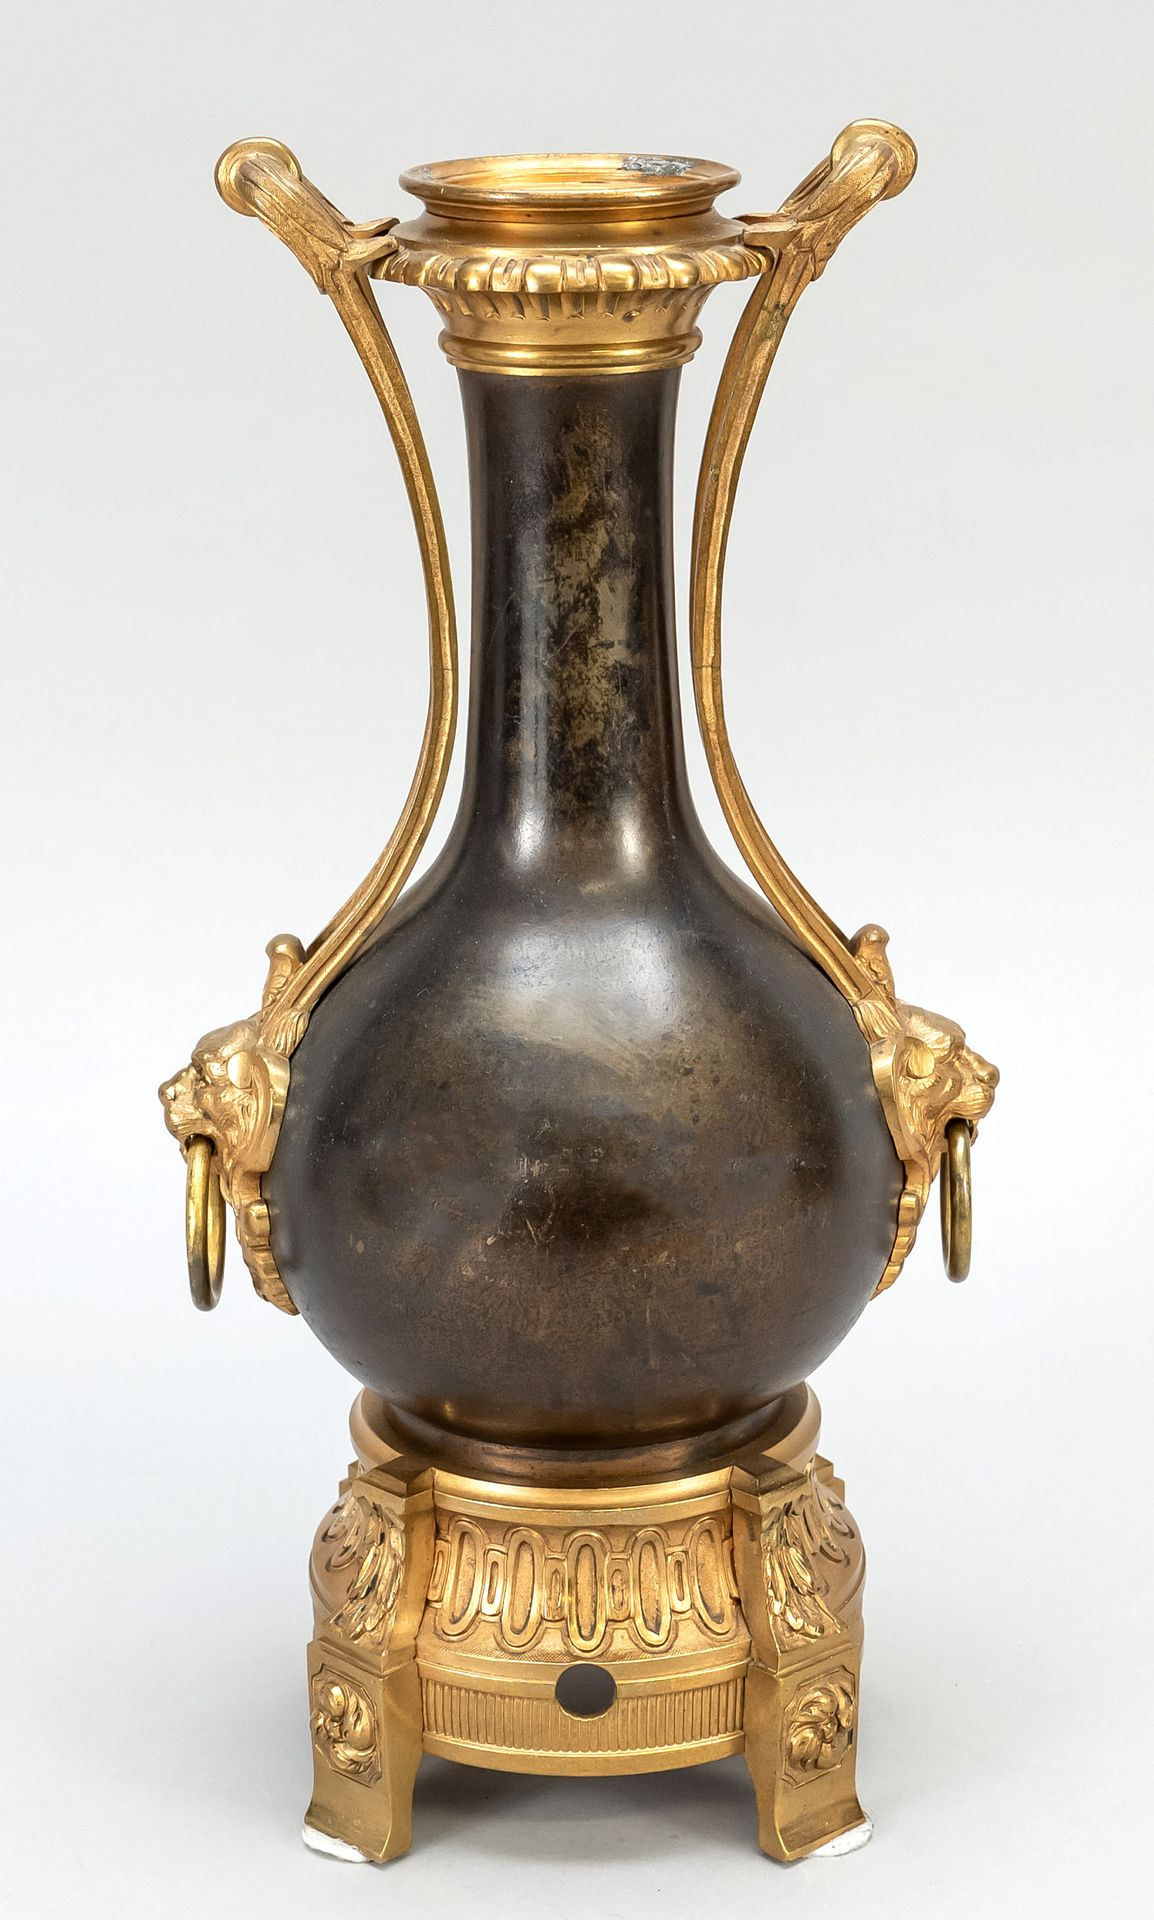 Null 花瓶/灯座，19世纪末，青铜花瓶与镀金的青铜支架。狮子面具上的环形把手，4个立柱脚上的装饰底座，颈部内有螺纹，高35厘米。